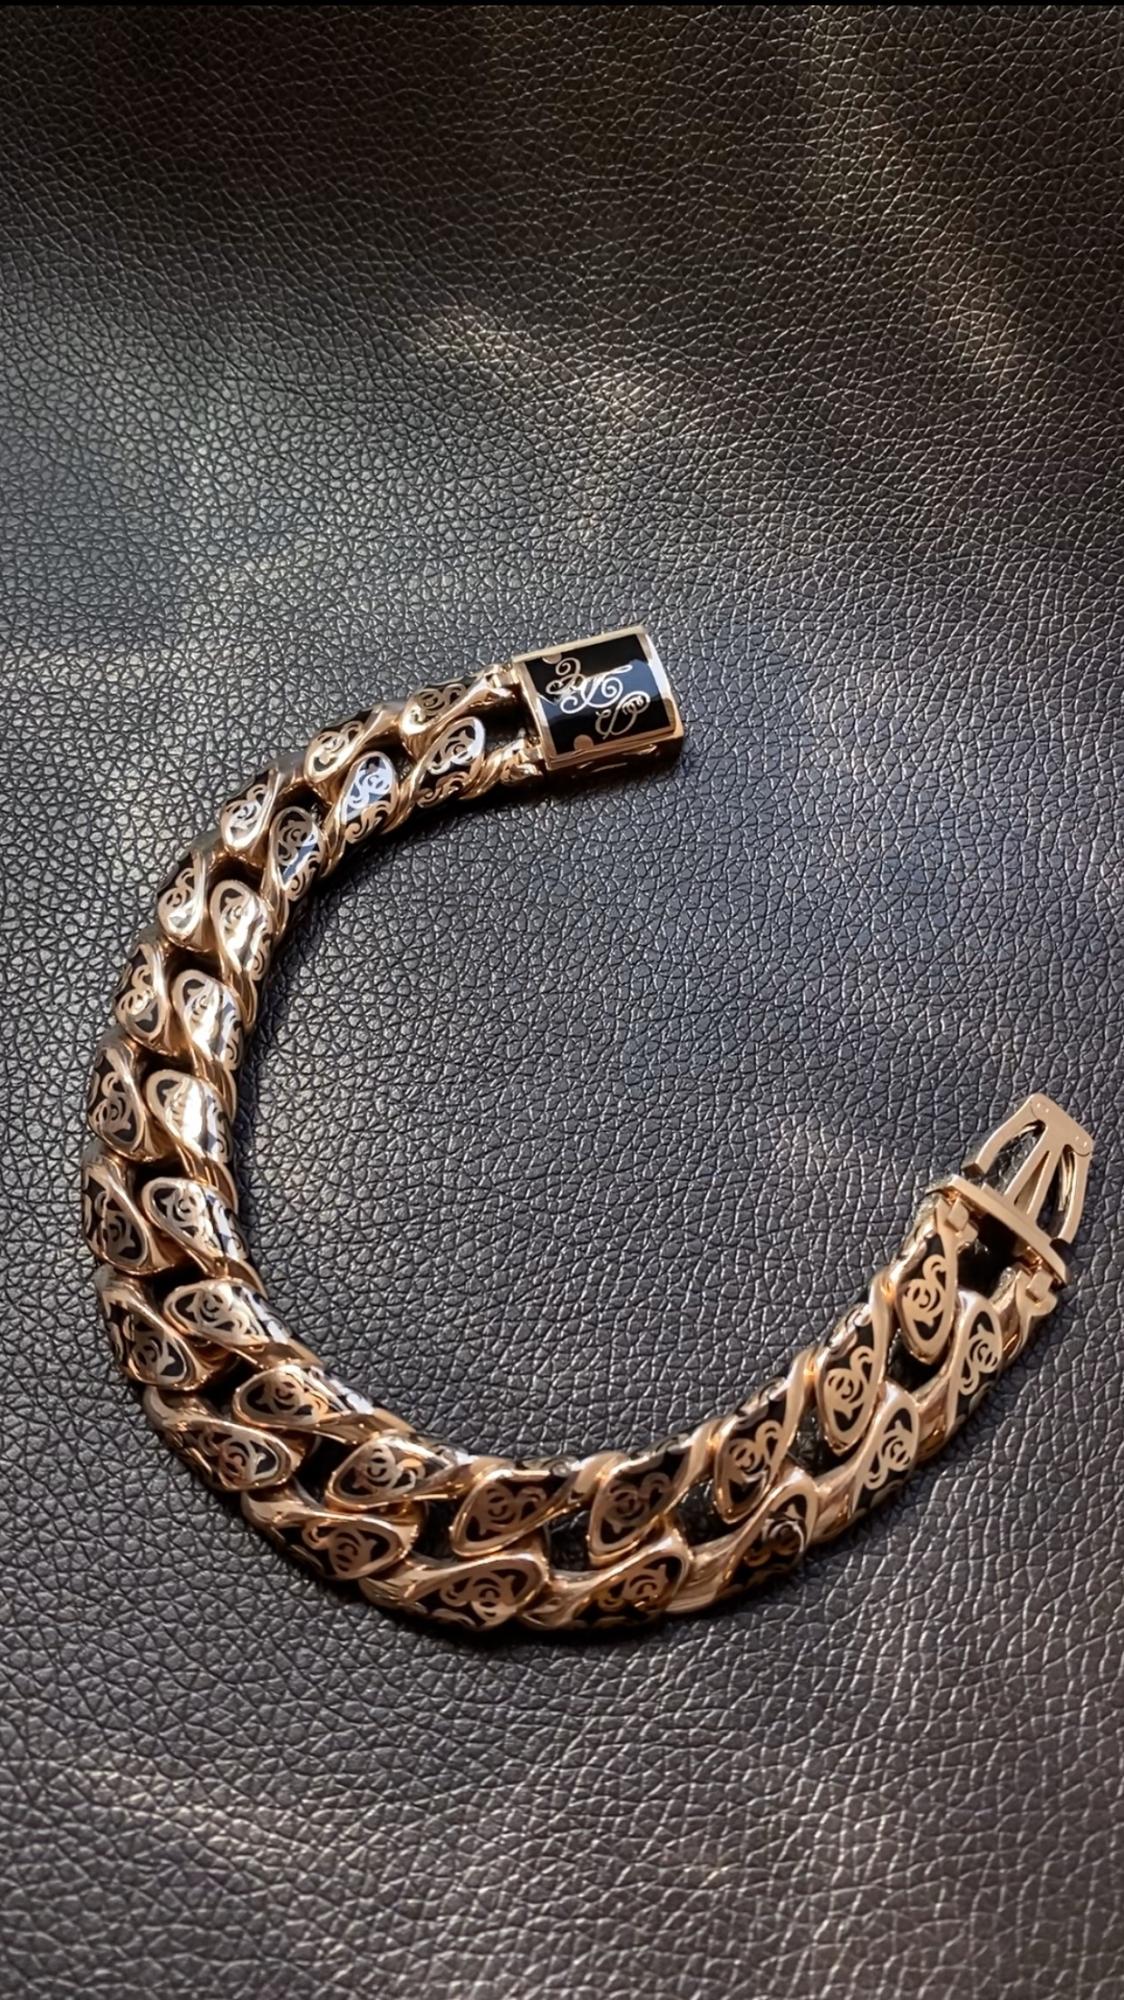 Эксклюзивный именной мужской браслет на заказ из золота с эмалью и инициалами